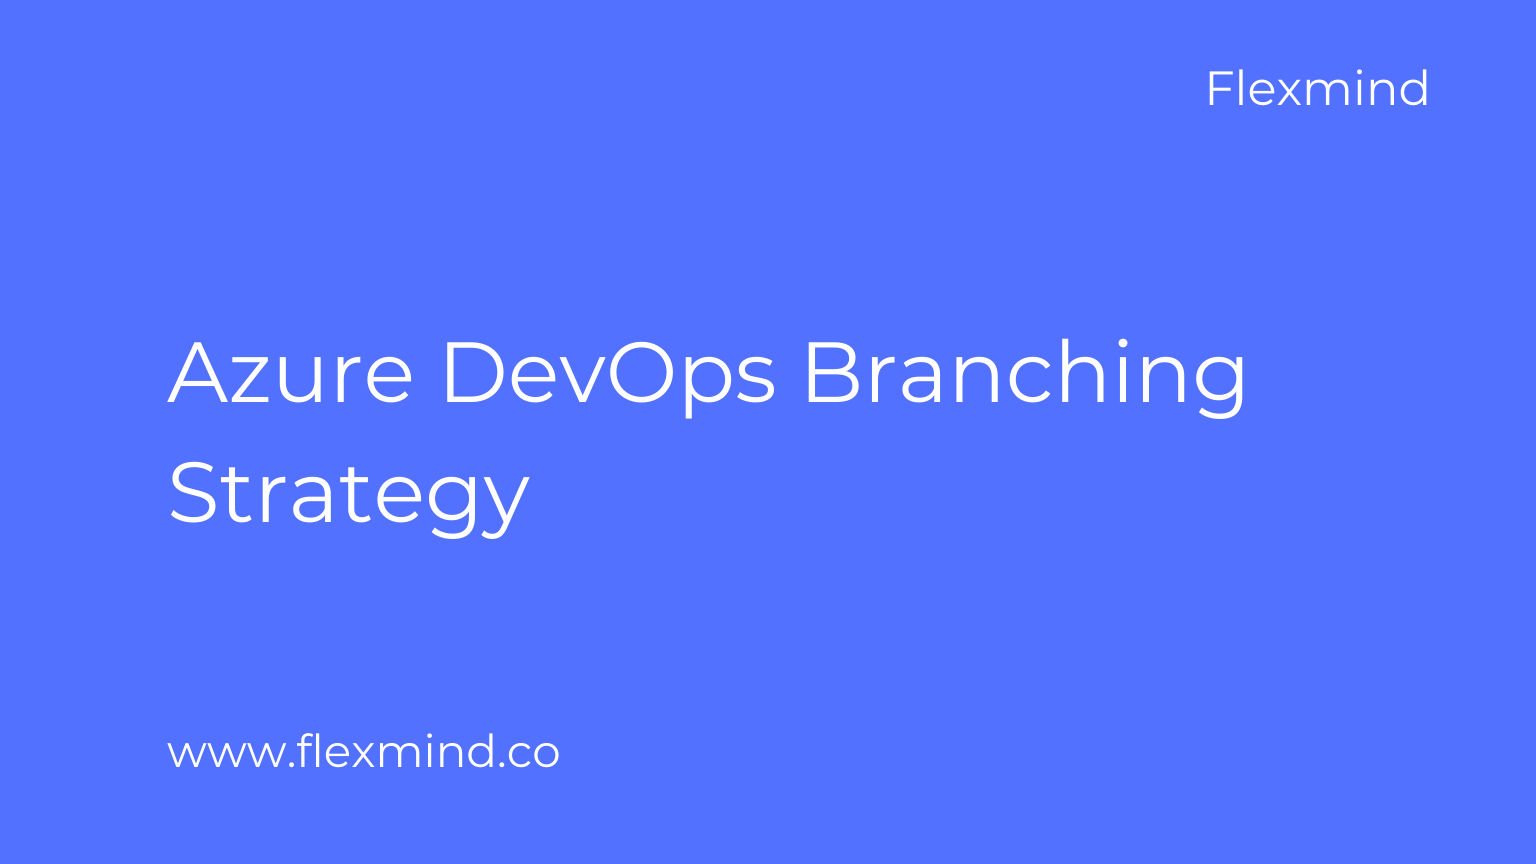 Azure DevOps Branching Strategy